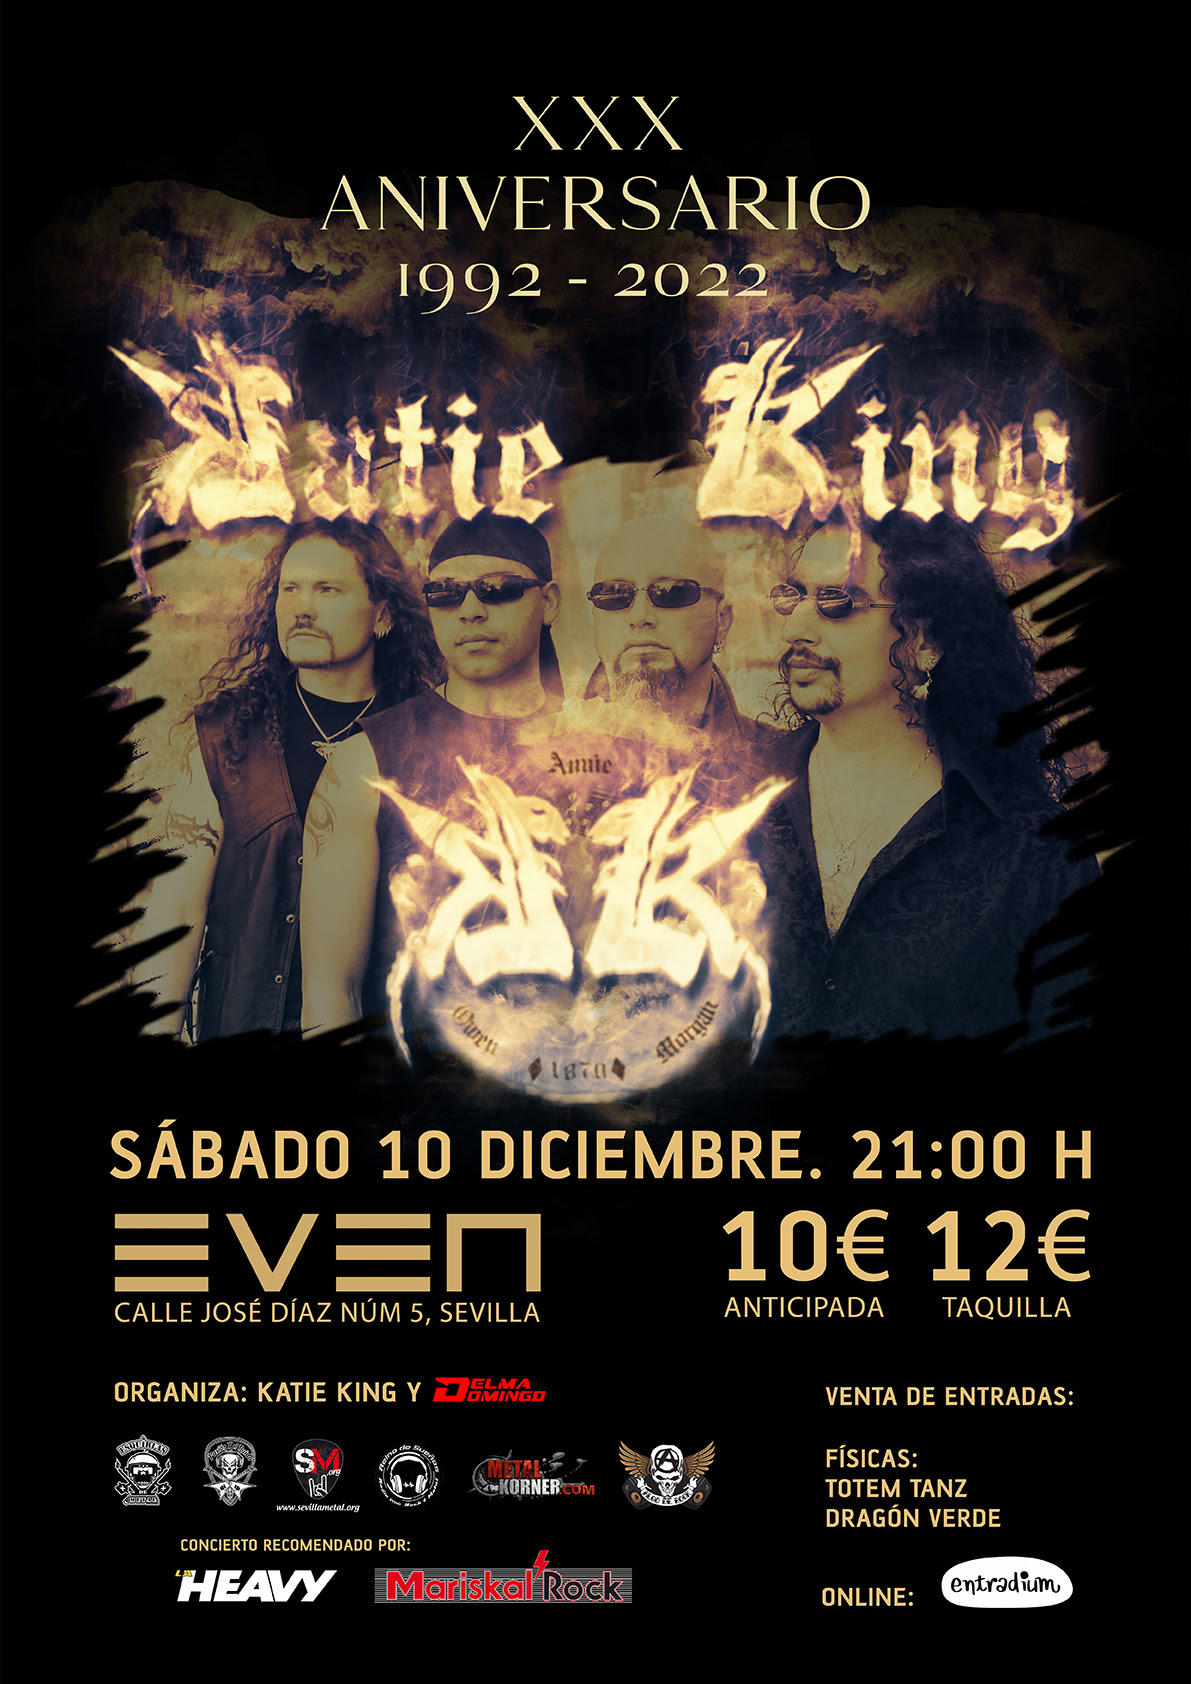 Katie King presentan el concierto XXX aniversario el 10 de diciembre en Sevilla